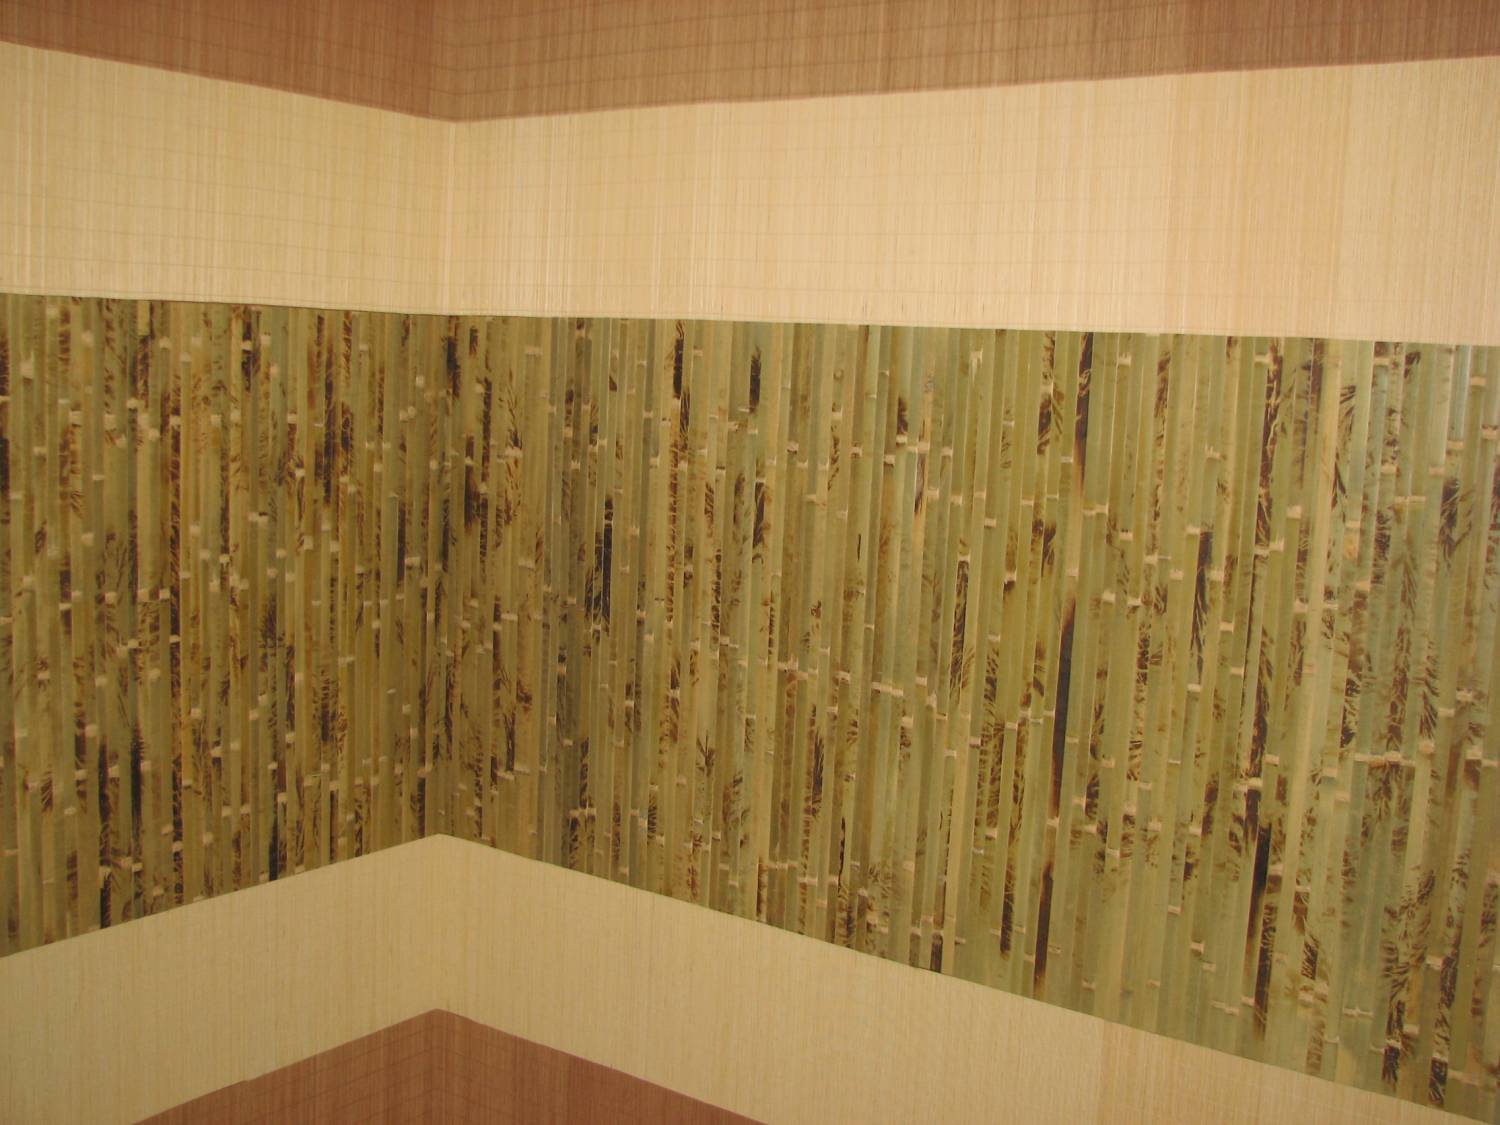 Бамбуковые обои: фото в интерьере, обои под бамбук, с рисунком, видео, как клеить на тканевой основе, на что, поклейка
декоративные бамбуковые обои: естественность в интерьере – дизайн интерьера и ремонт квартиры своими руками